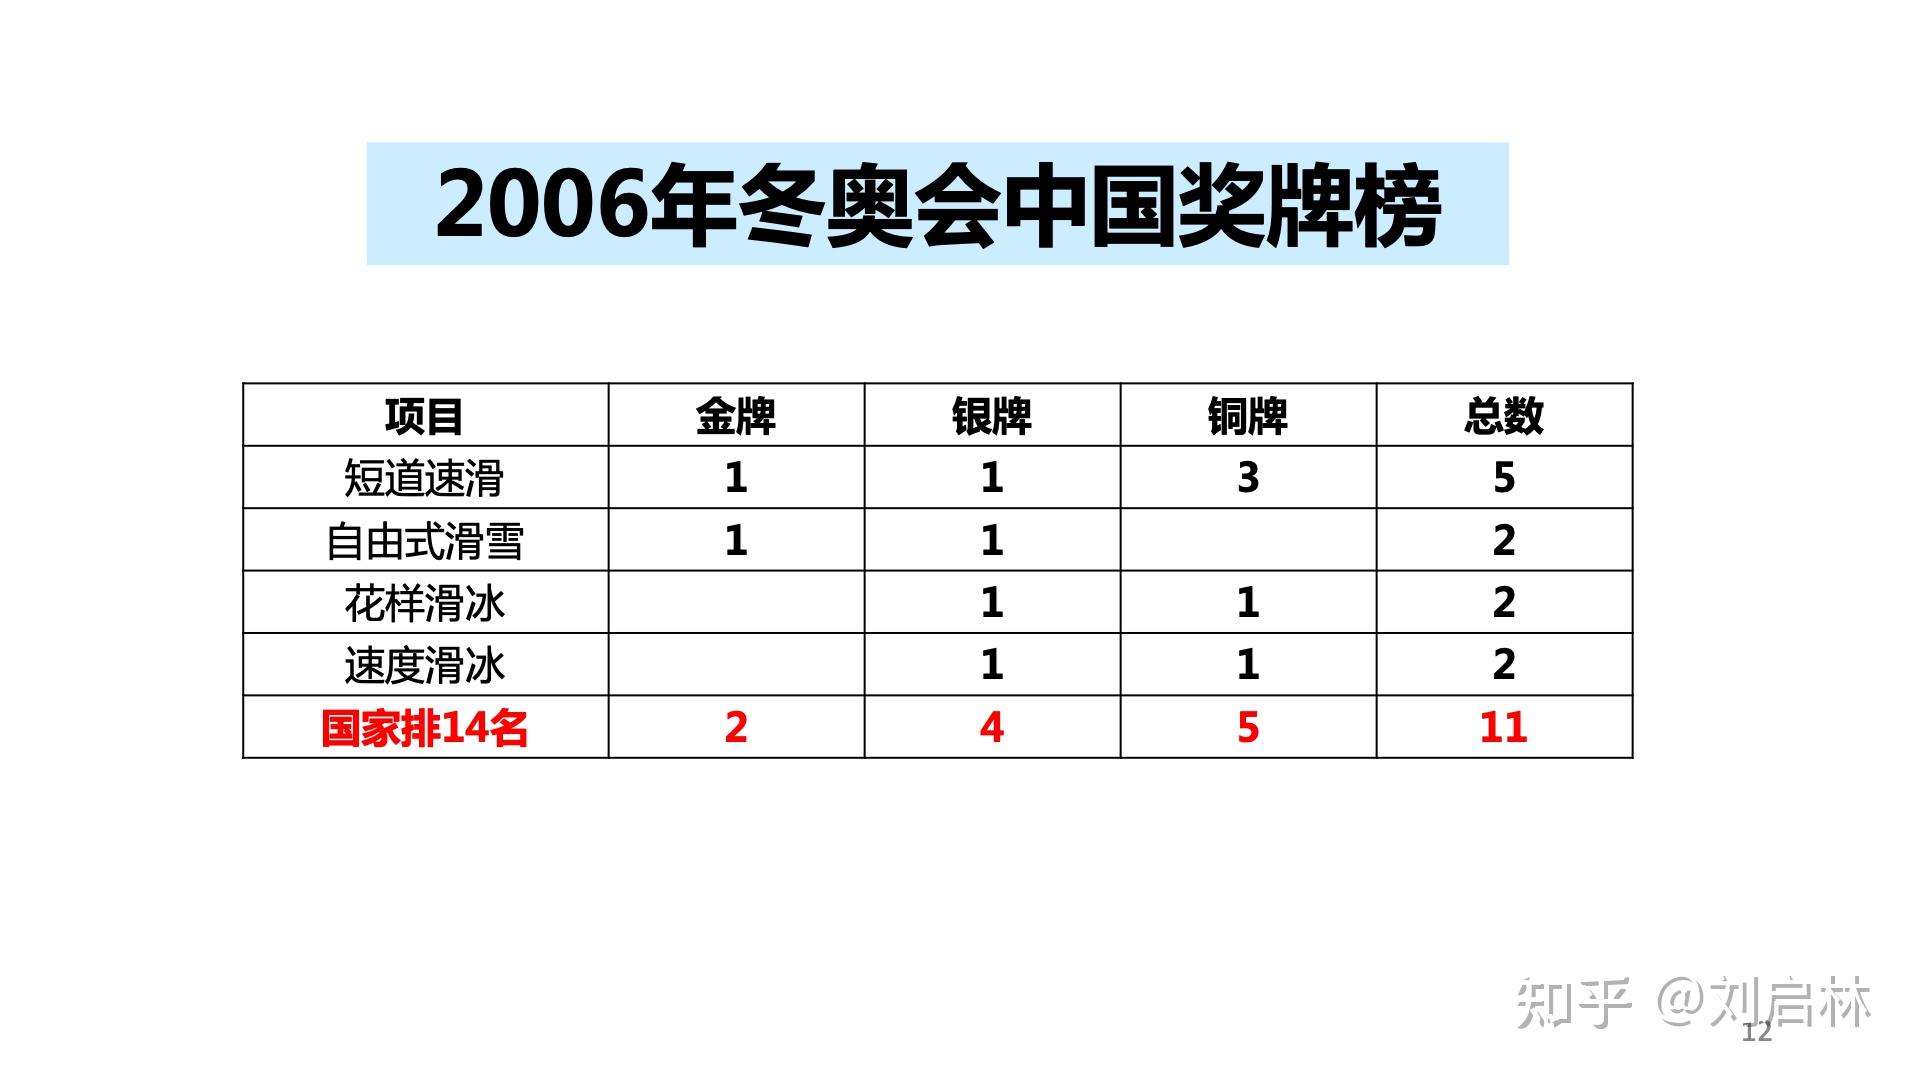 即第18届冬奥会,中国获得奖牌的项目如下:1998年长野冬奥会1998年长野